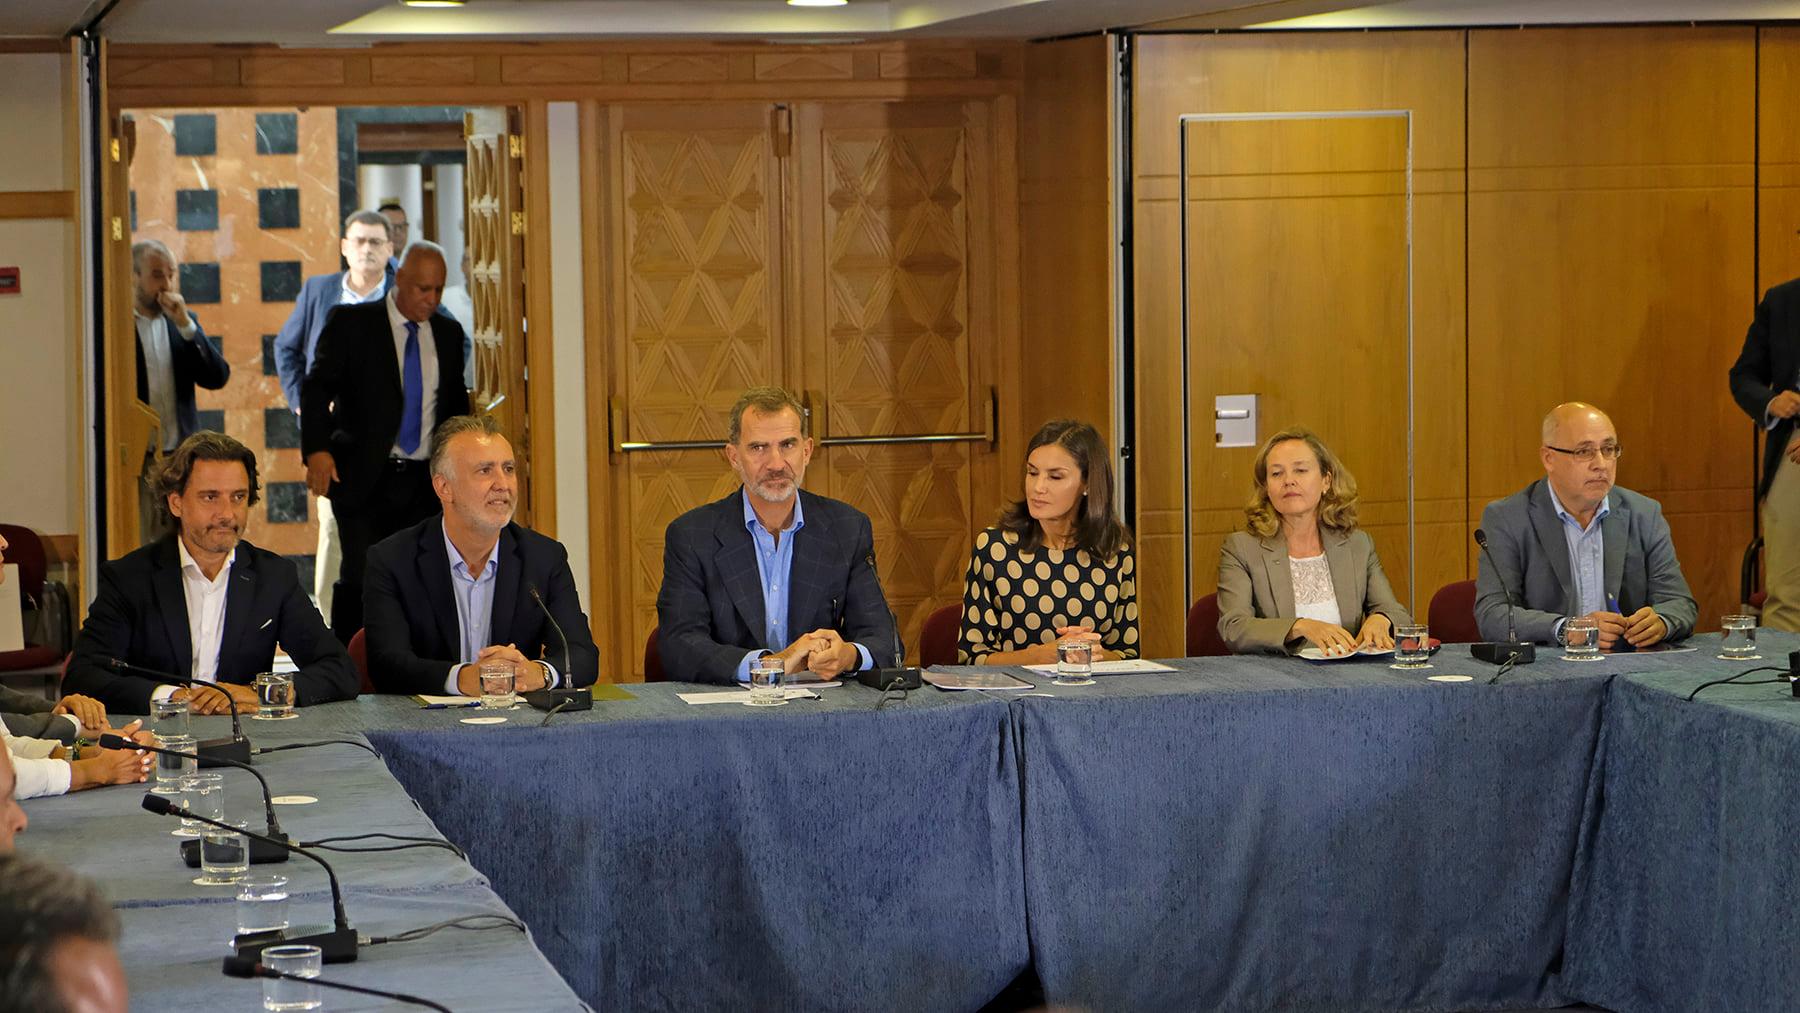 SSMM los Reyes acompañados del presidente de Canarias, el presidente del Parlamento y otras autoridades